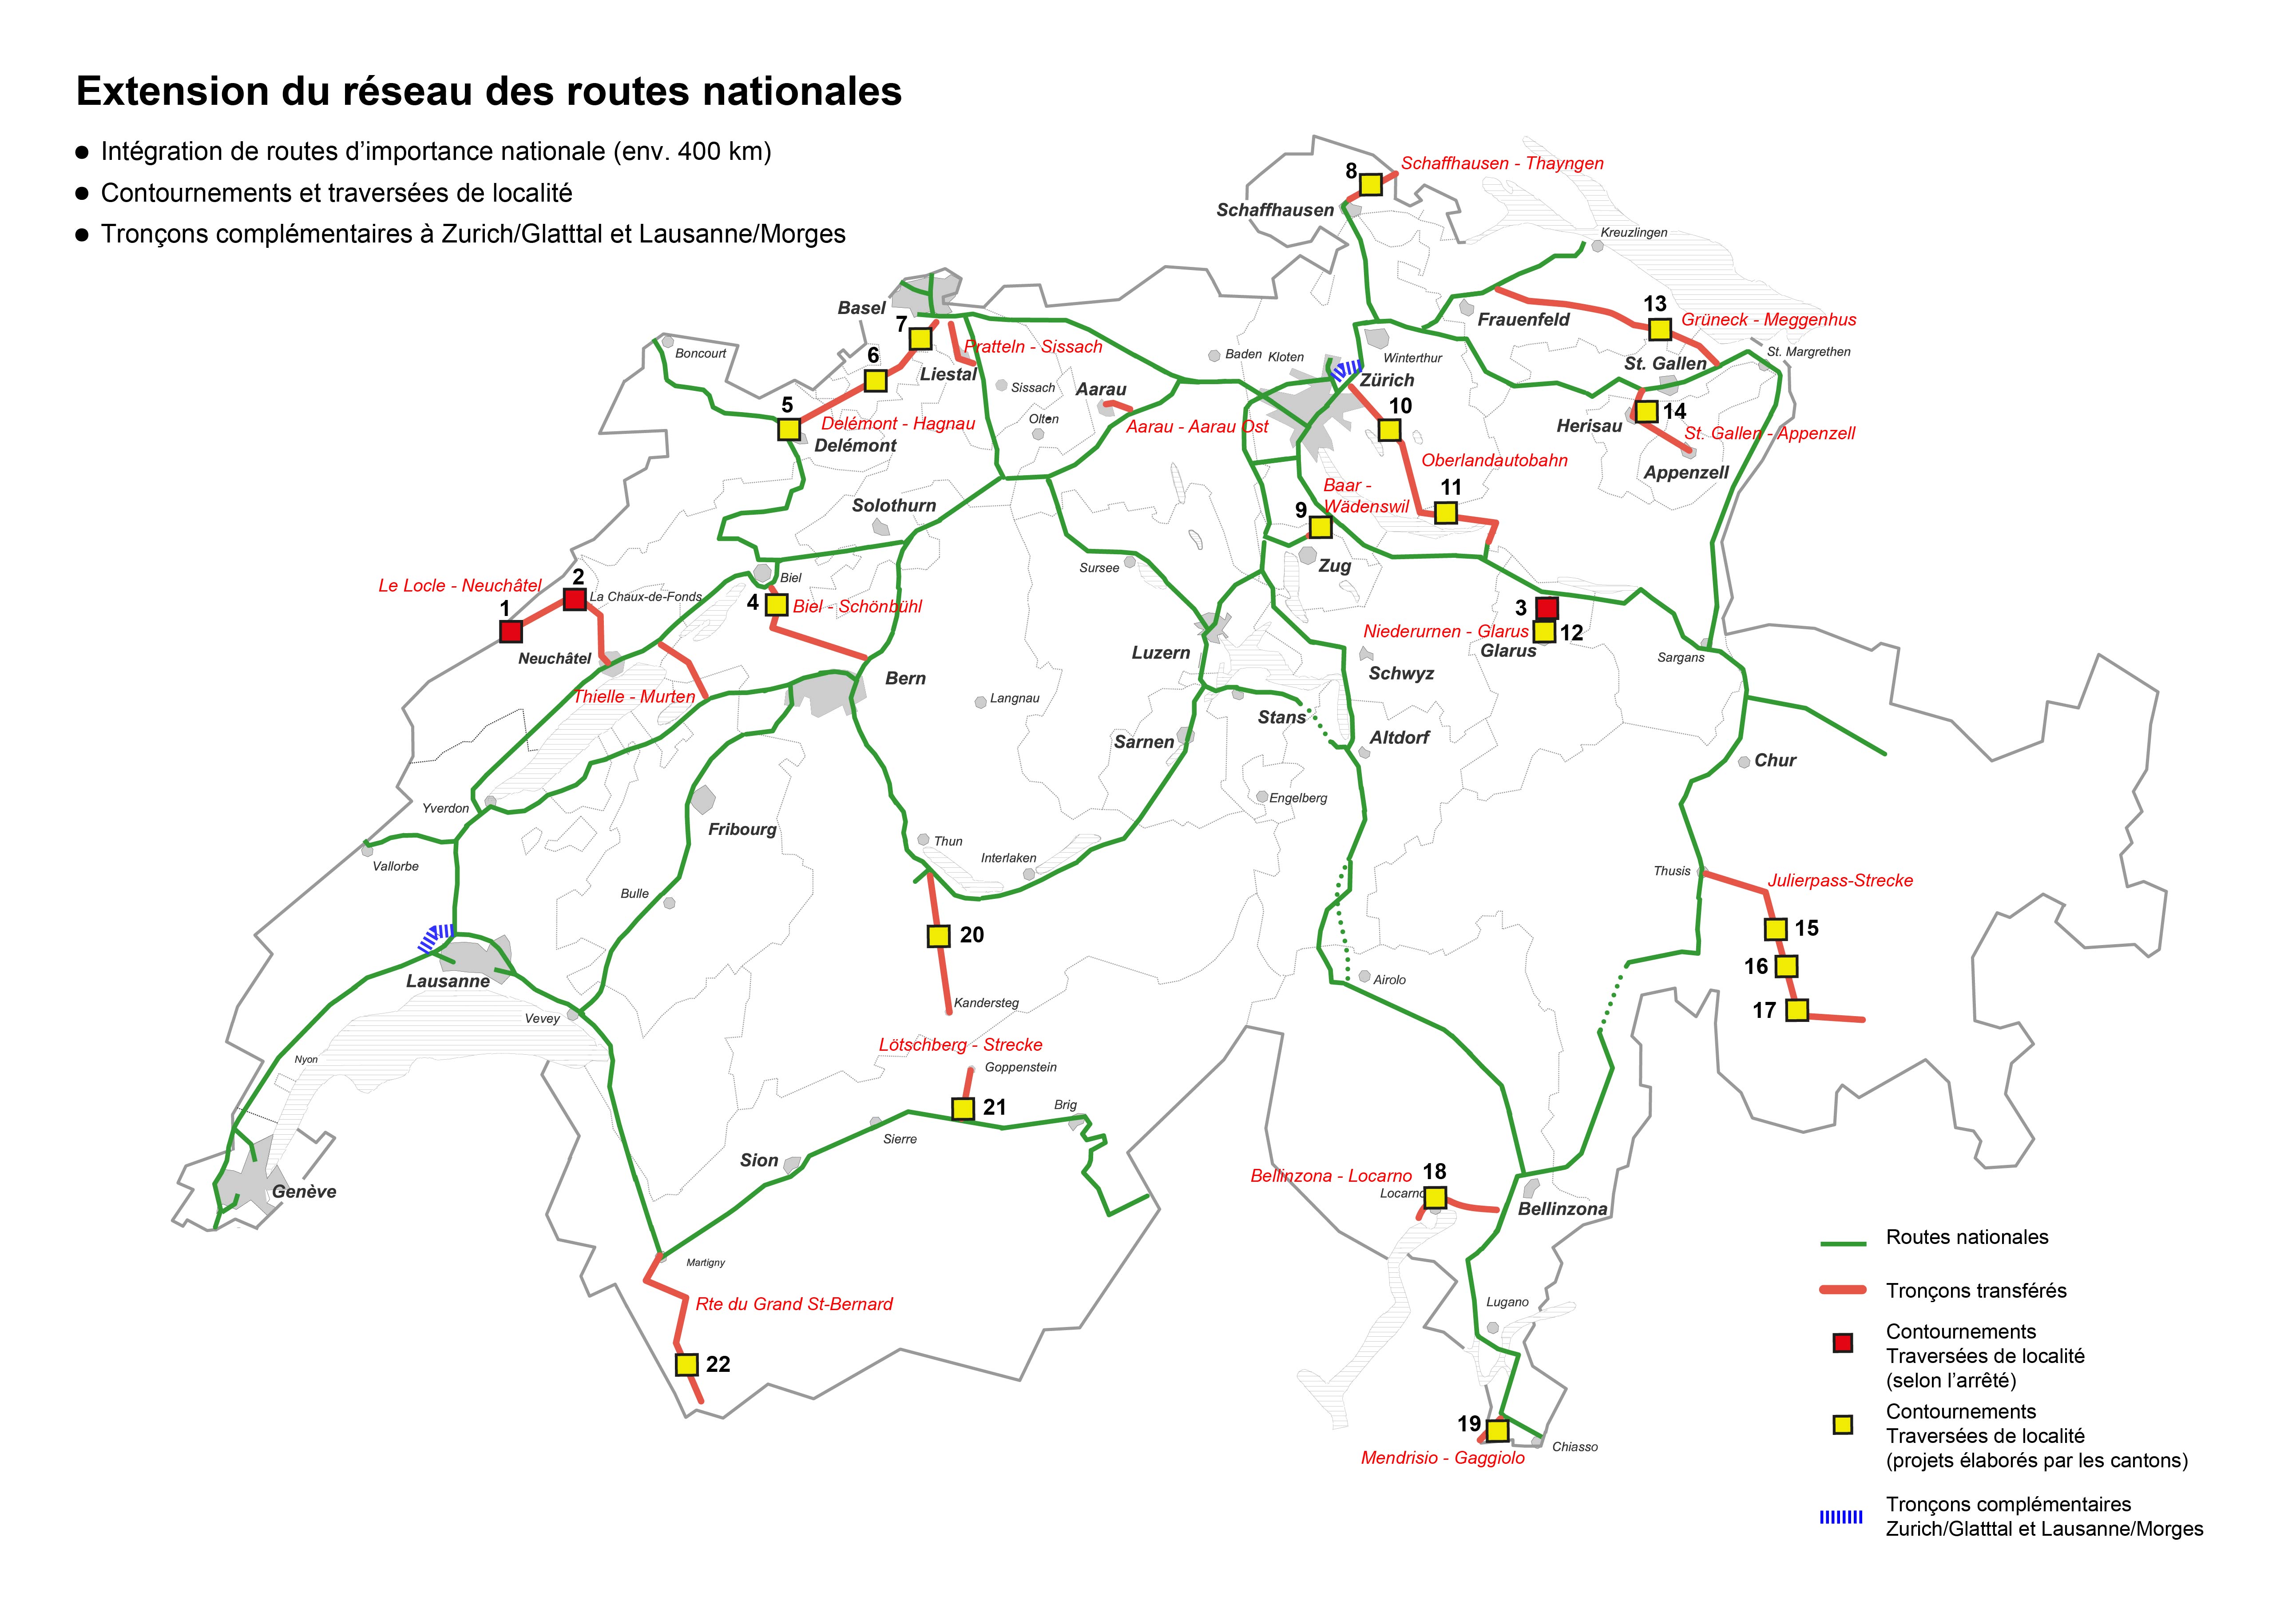 Extension du réseau des routes nationales